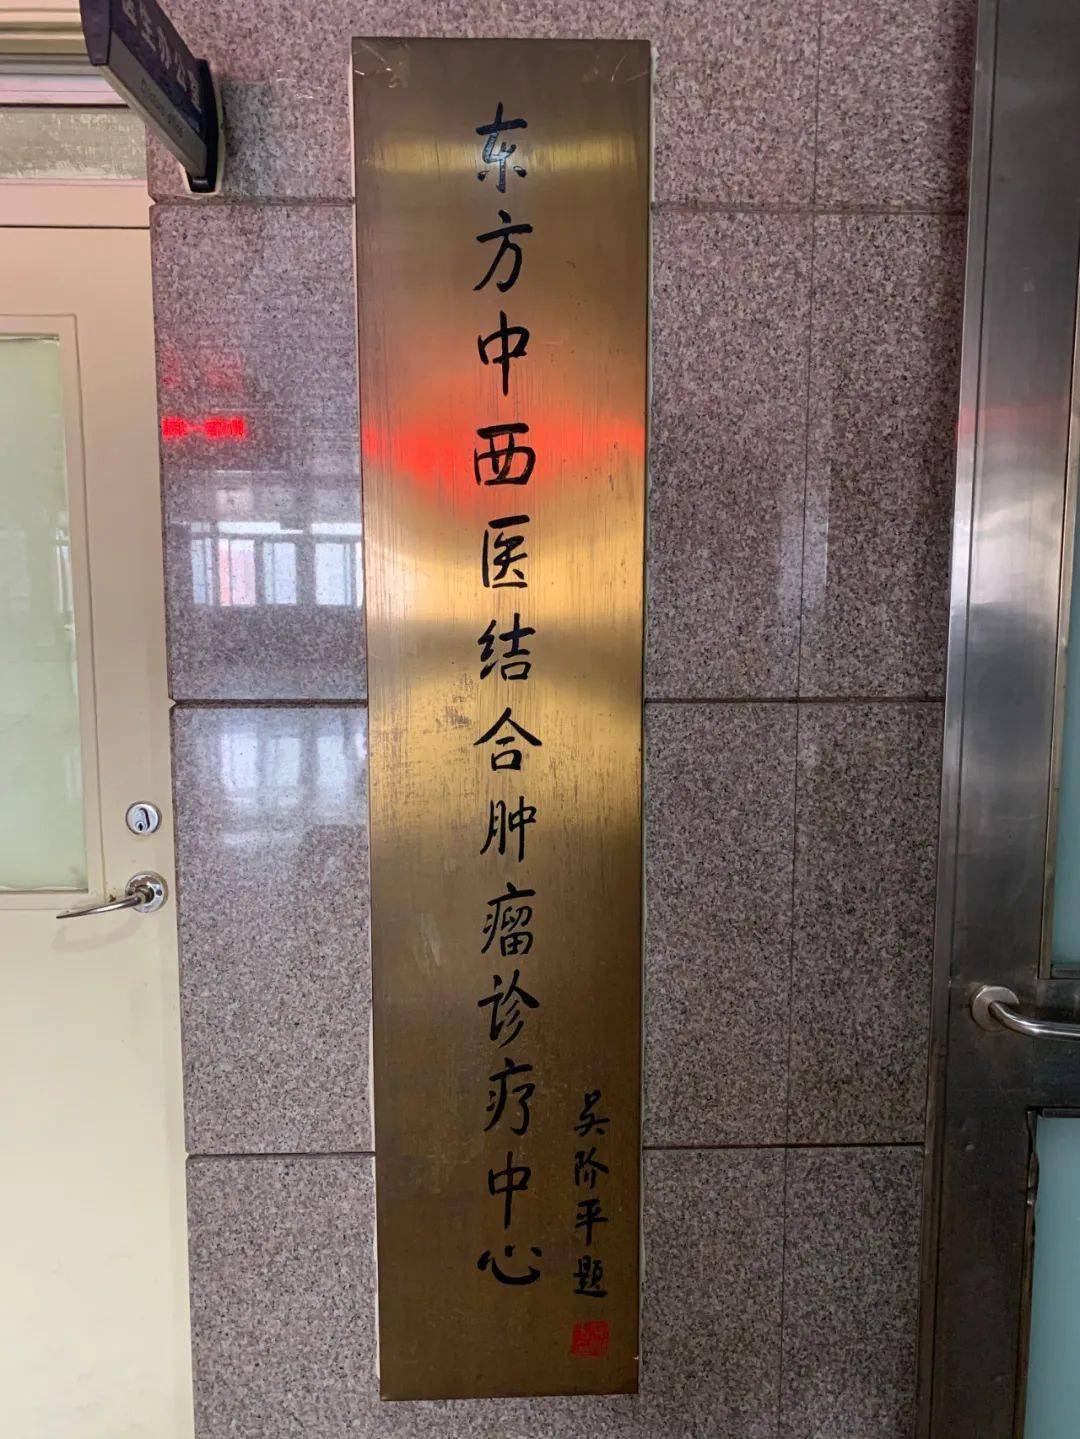 北京中医药大学东方医院我来告诉你北京中医药大学东方医院是三甲医院吗